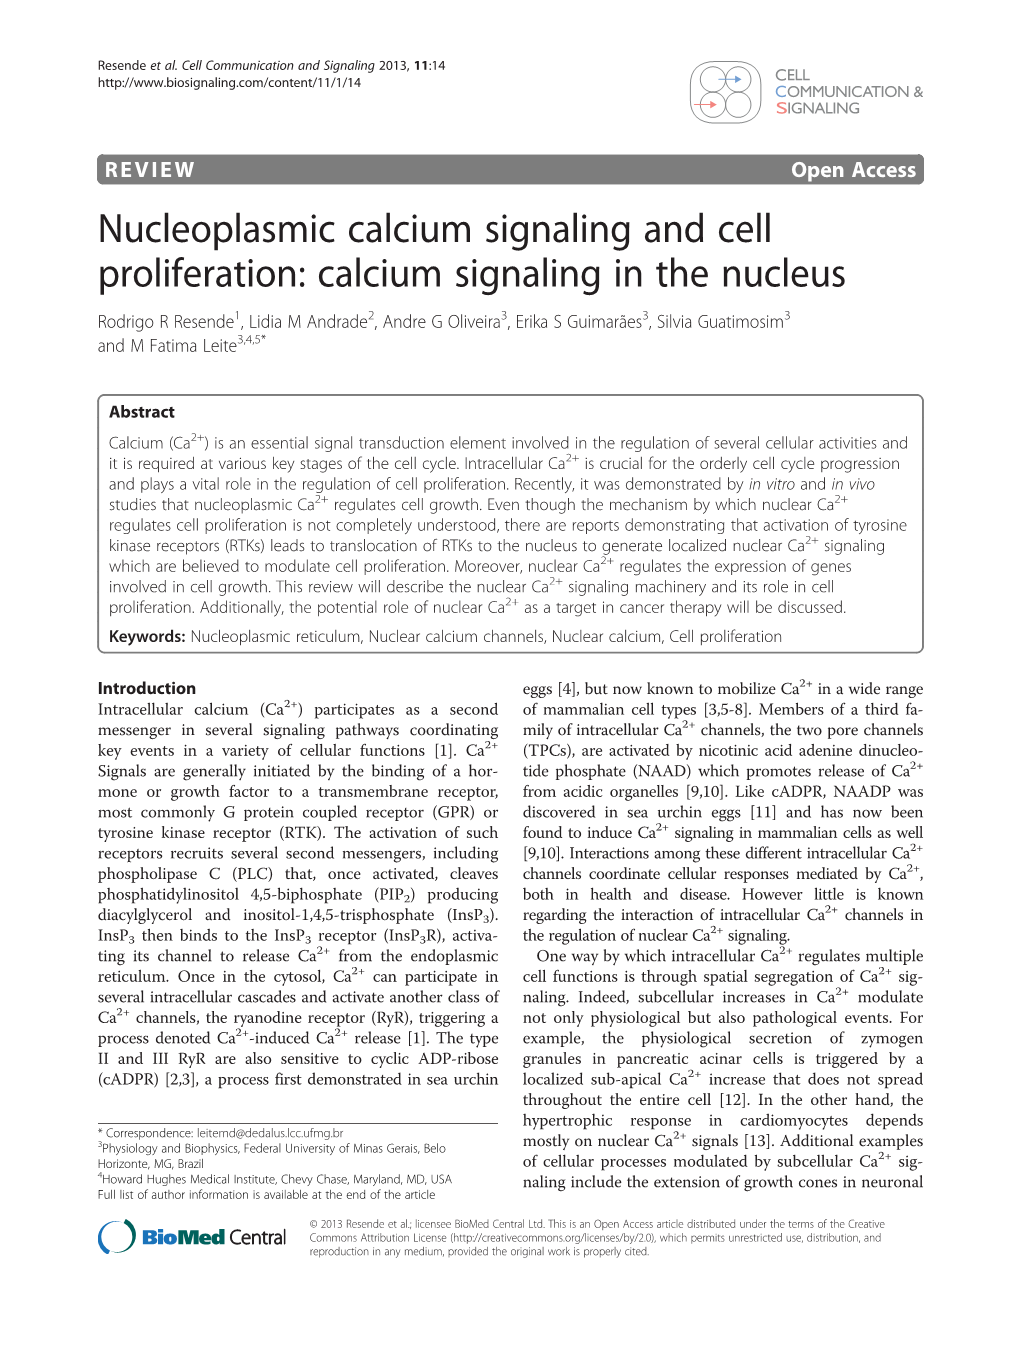 Nucleoplasmic Calcium Signaling and Cell Proliferation: Calcium Signaling